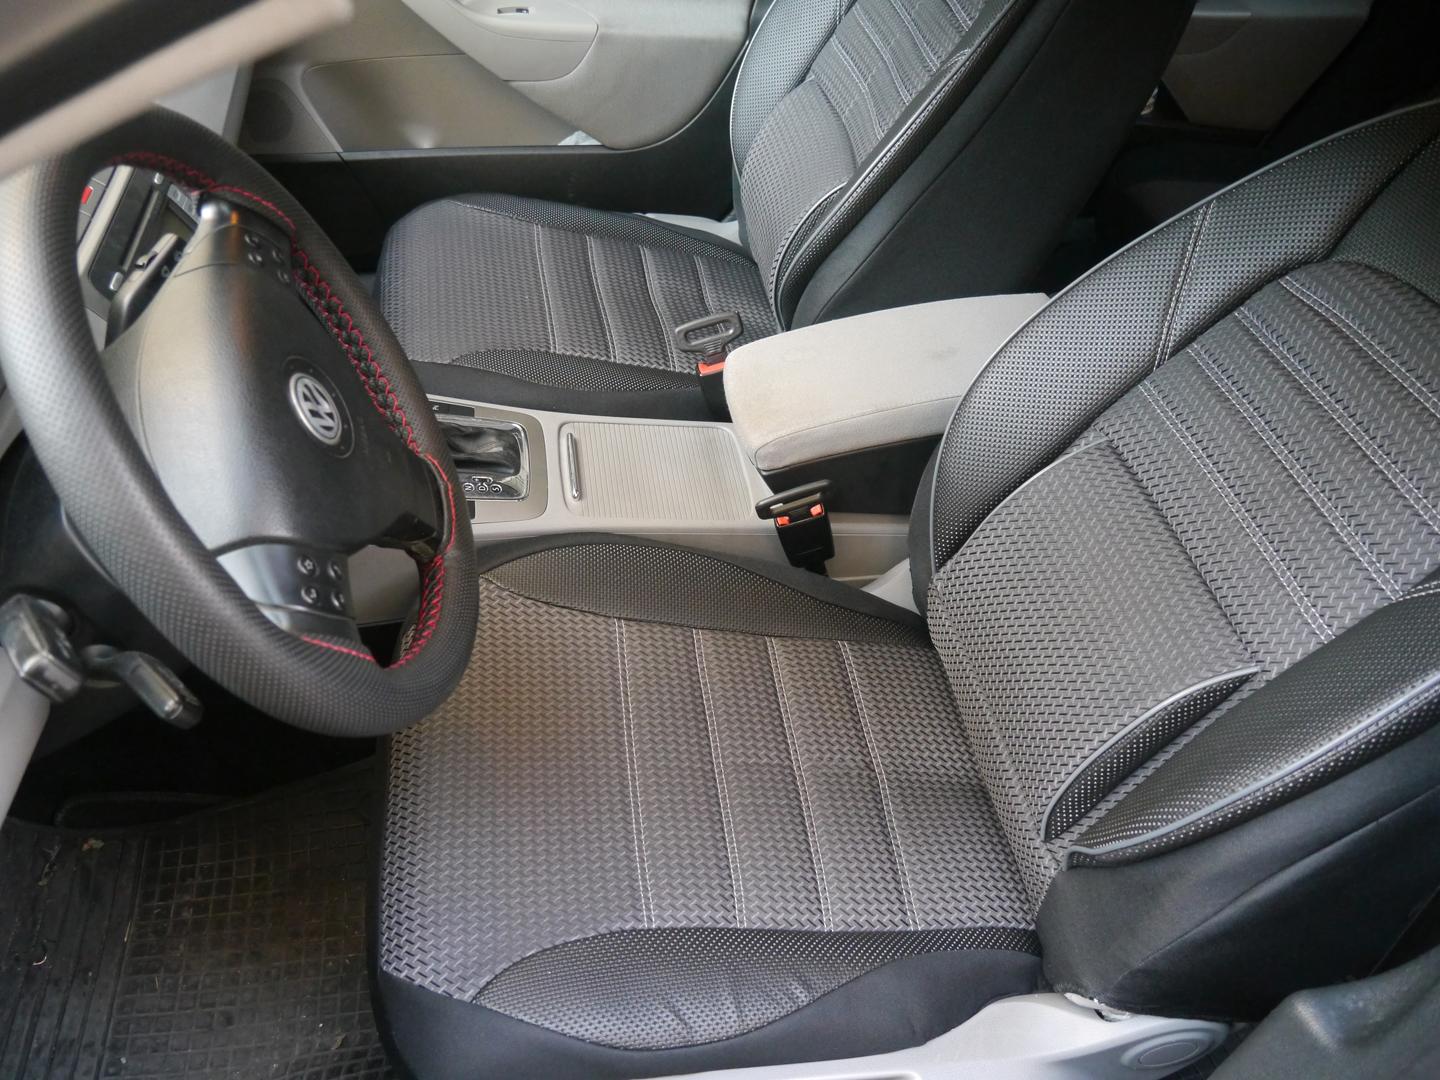 Housse protection BMW Série 3 E30 - bâche Coversoft : usage intérieur